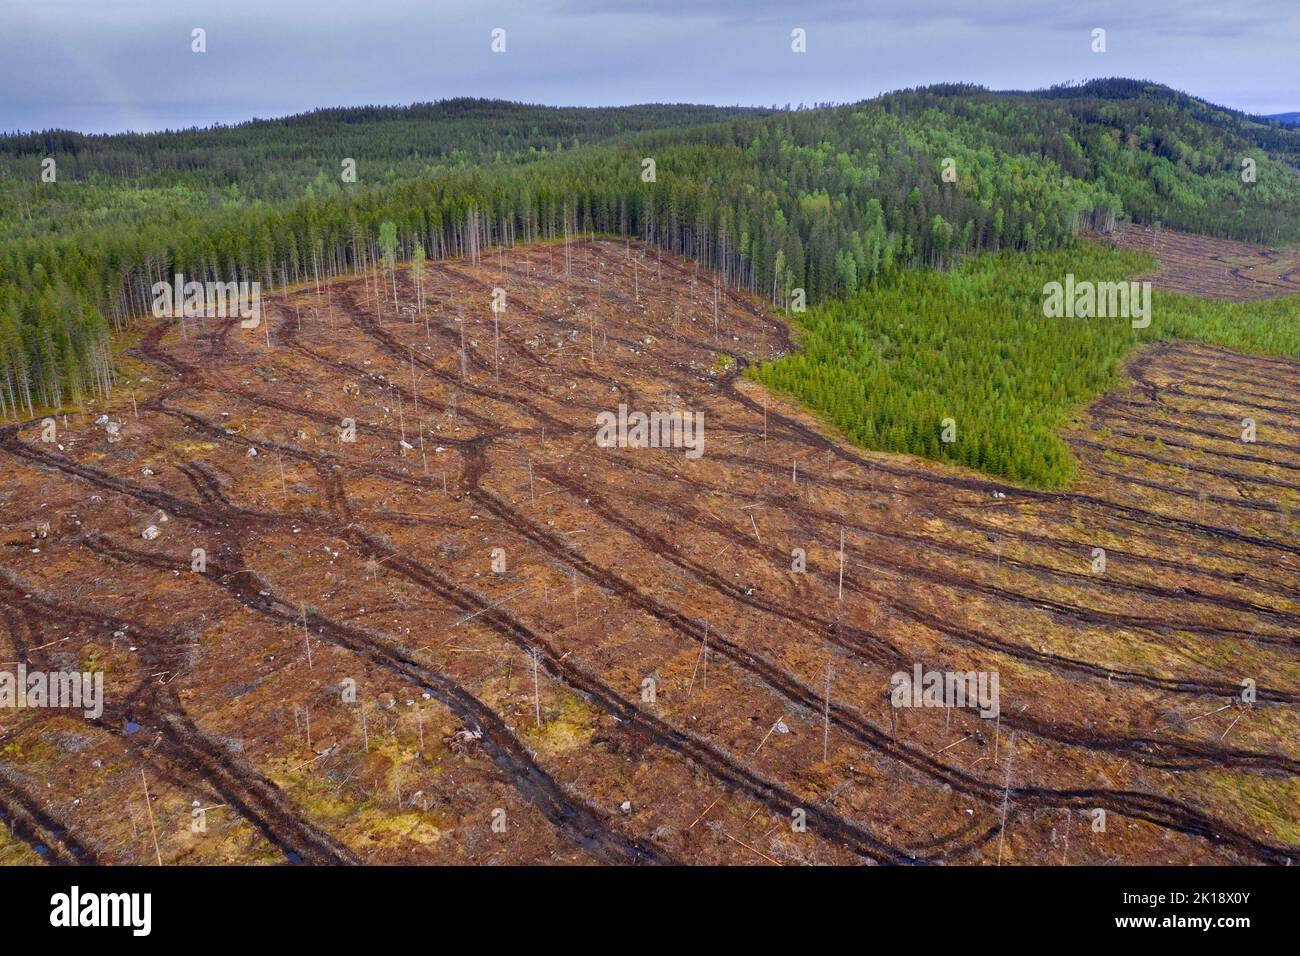 Vista aérea sobre el área de corte claro sueca, corte claro / tala clara es una práctica forestal / maderera en la cual todos los árboles son talados, Dalarna, Suecia Foto de stock